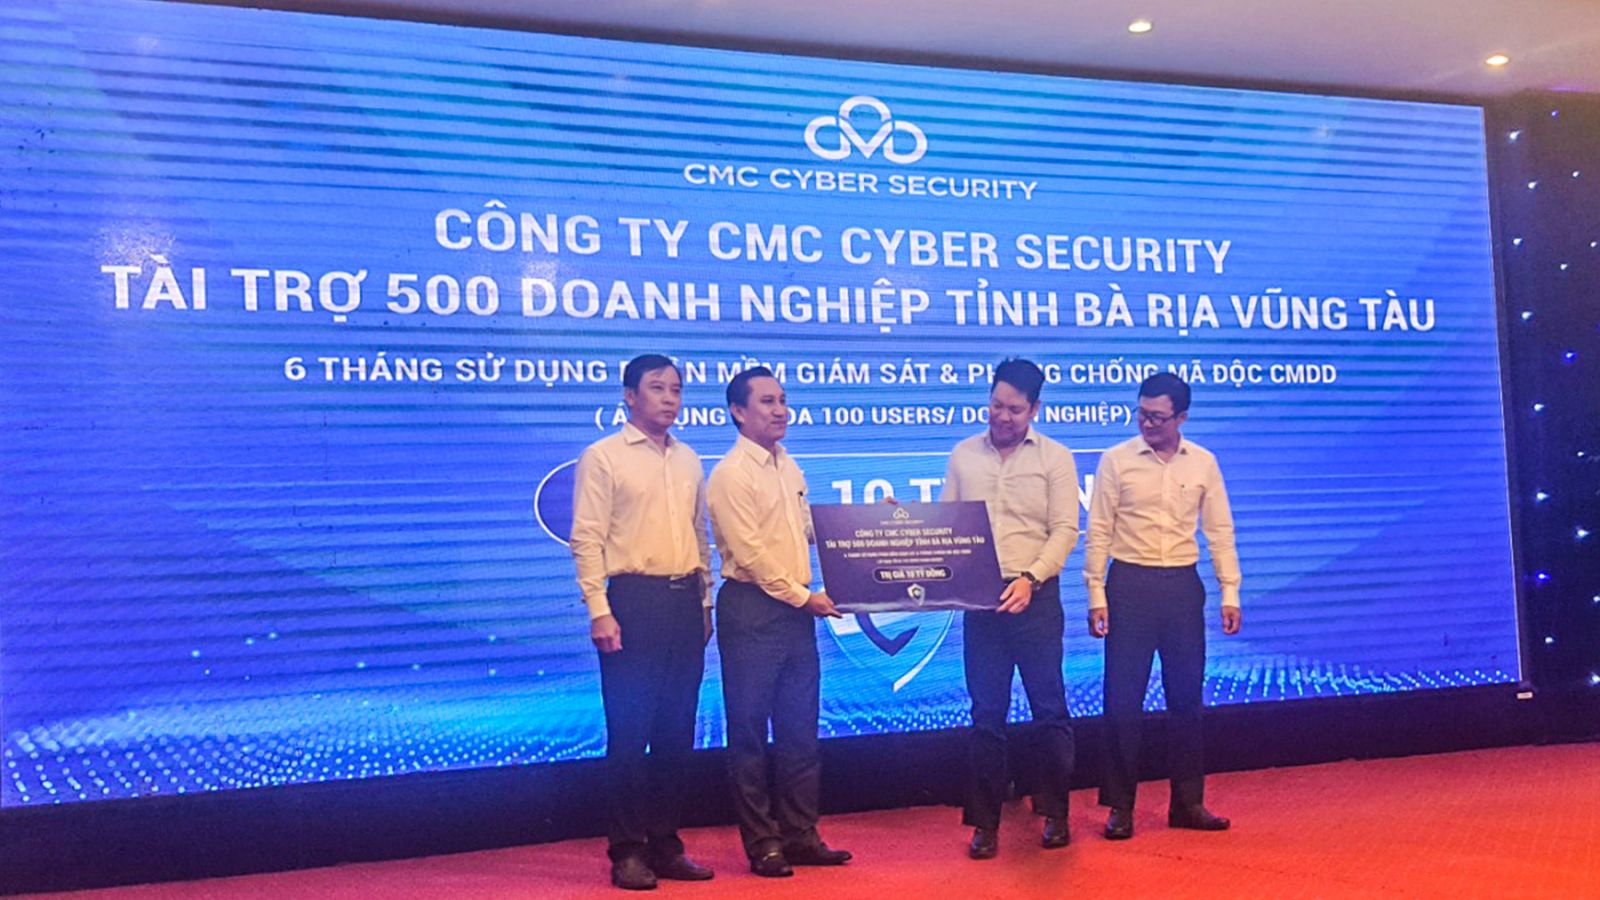 Ông Lê Thanh Sơn - Phó Chủ tịch cấp cao/ Giám đốc Tài chính Tập đoàn Công nghệ CMC trao tặng cho 500 Doanh nghiệp tỉnh Bà Rịa – Vũng Tàu 6 tháng sử dụng phần mềm giám sát và phòng chống mã độc CMDD.